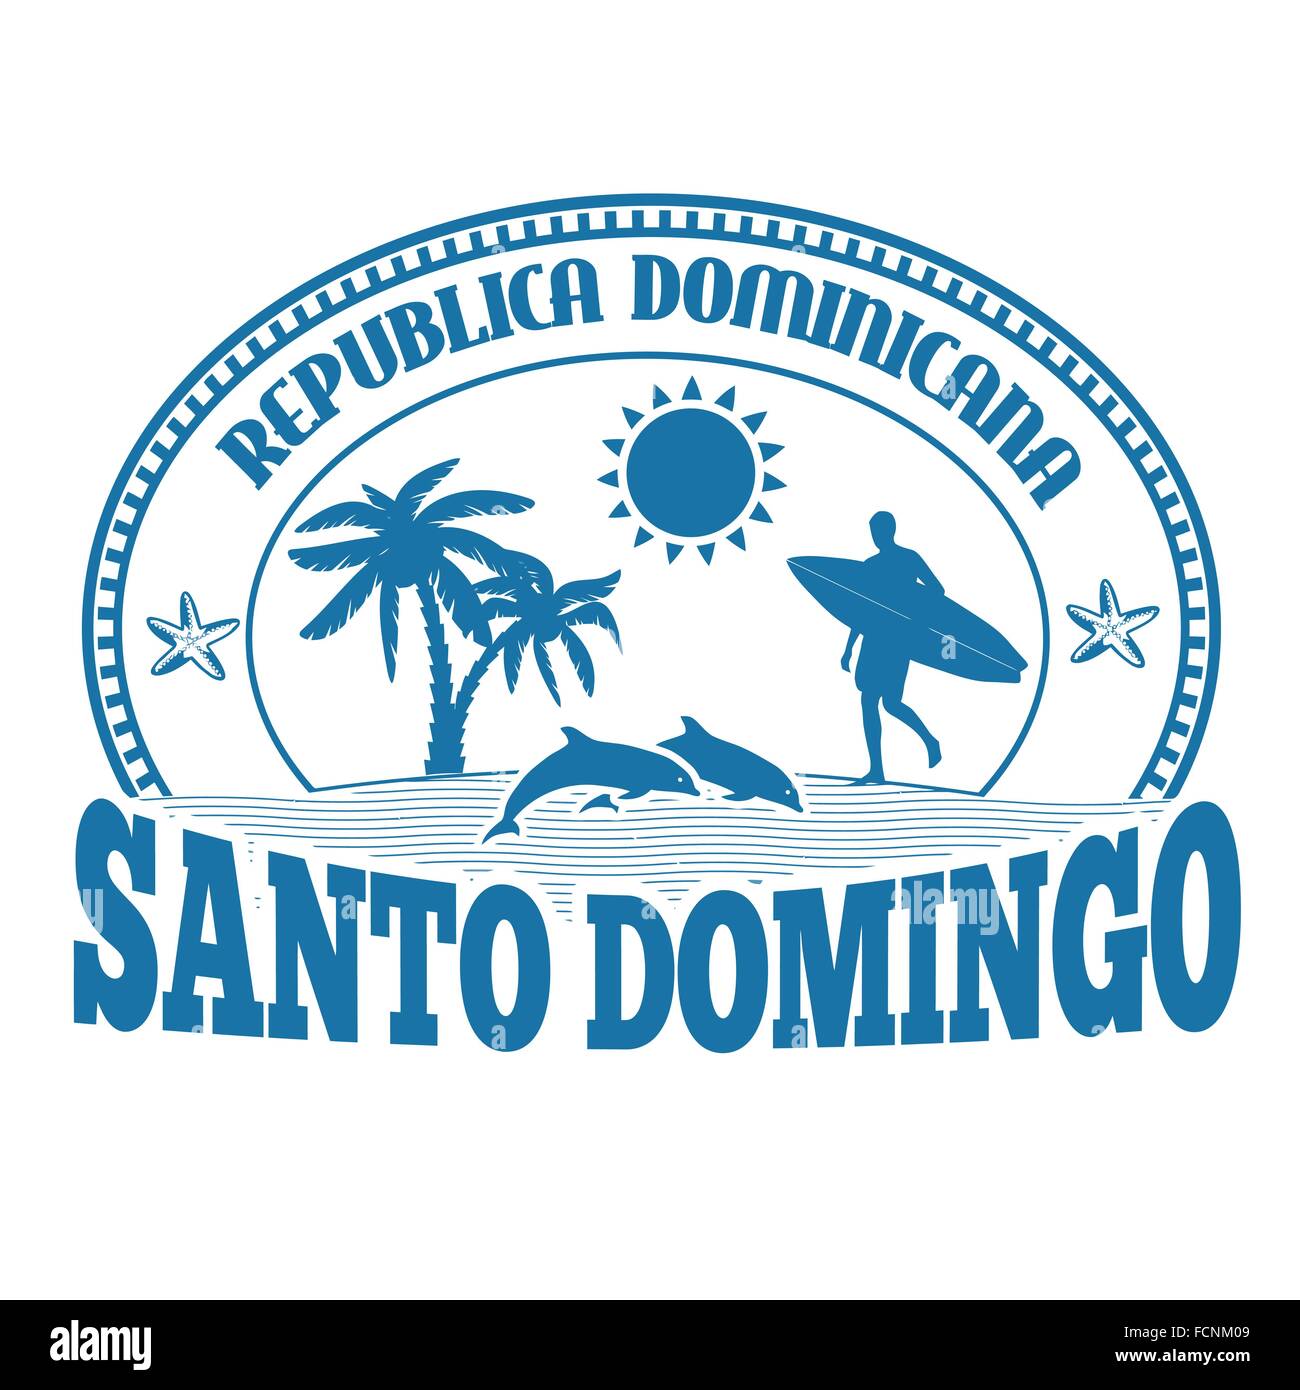 Santo Domingo, Dominikanische Republik, Stempel oder Beschriftung auf weißem Hintergrund, Vektor-illustration Stock Vektor